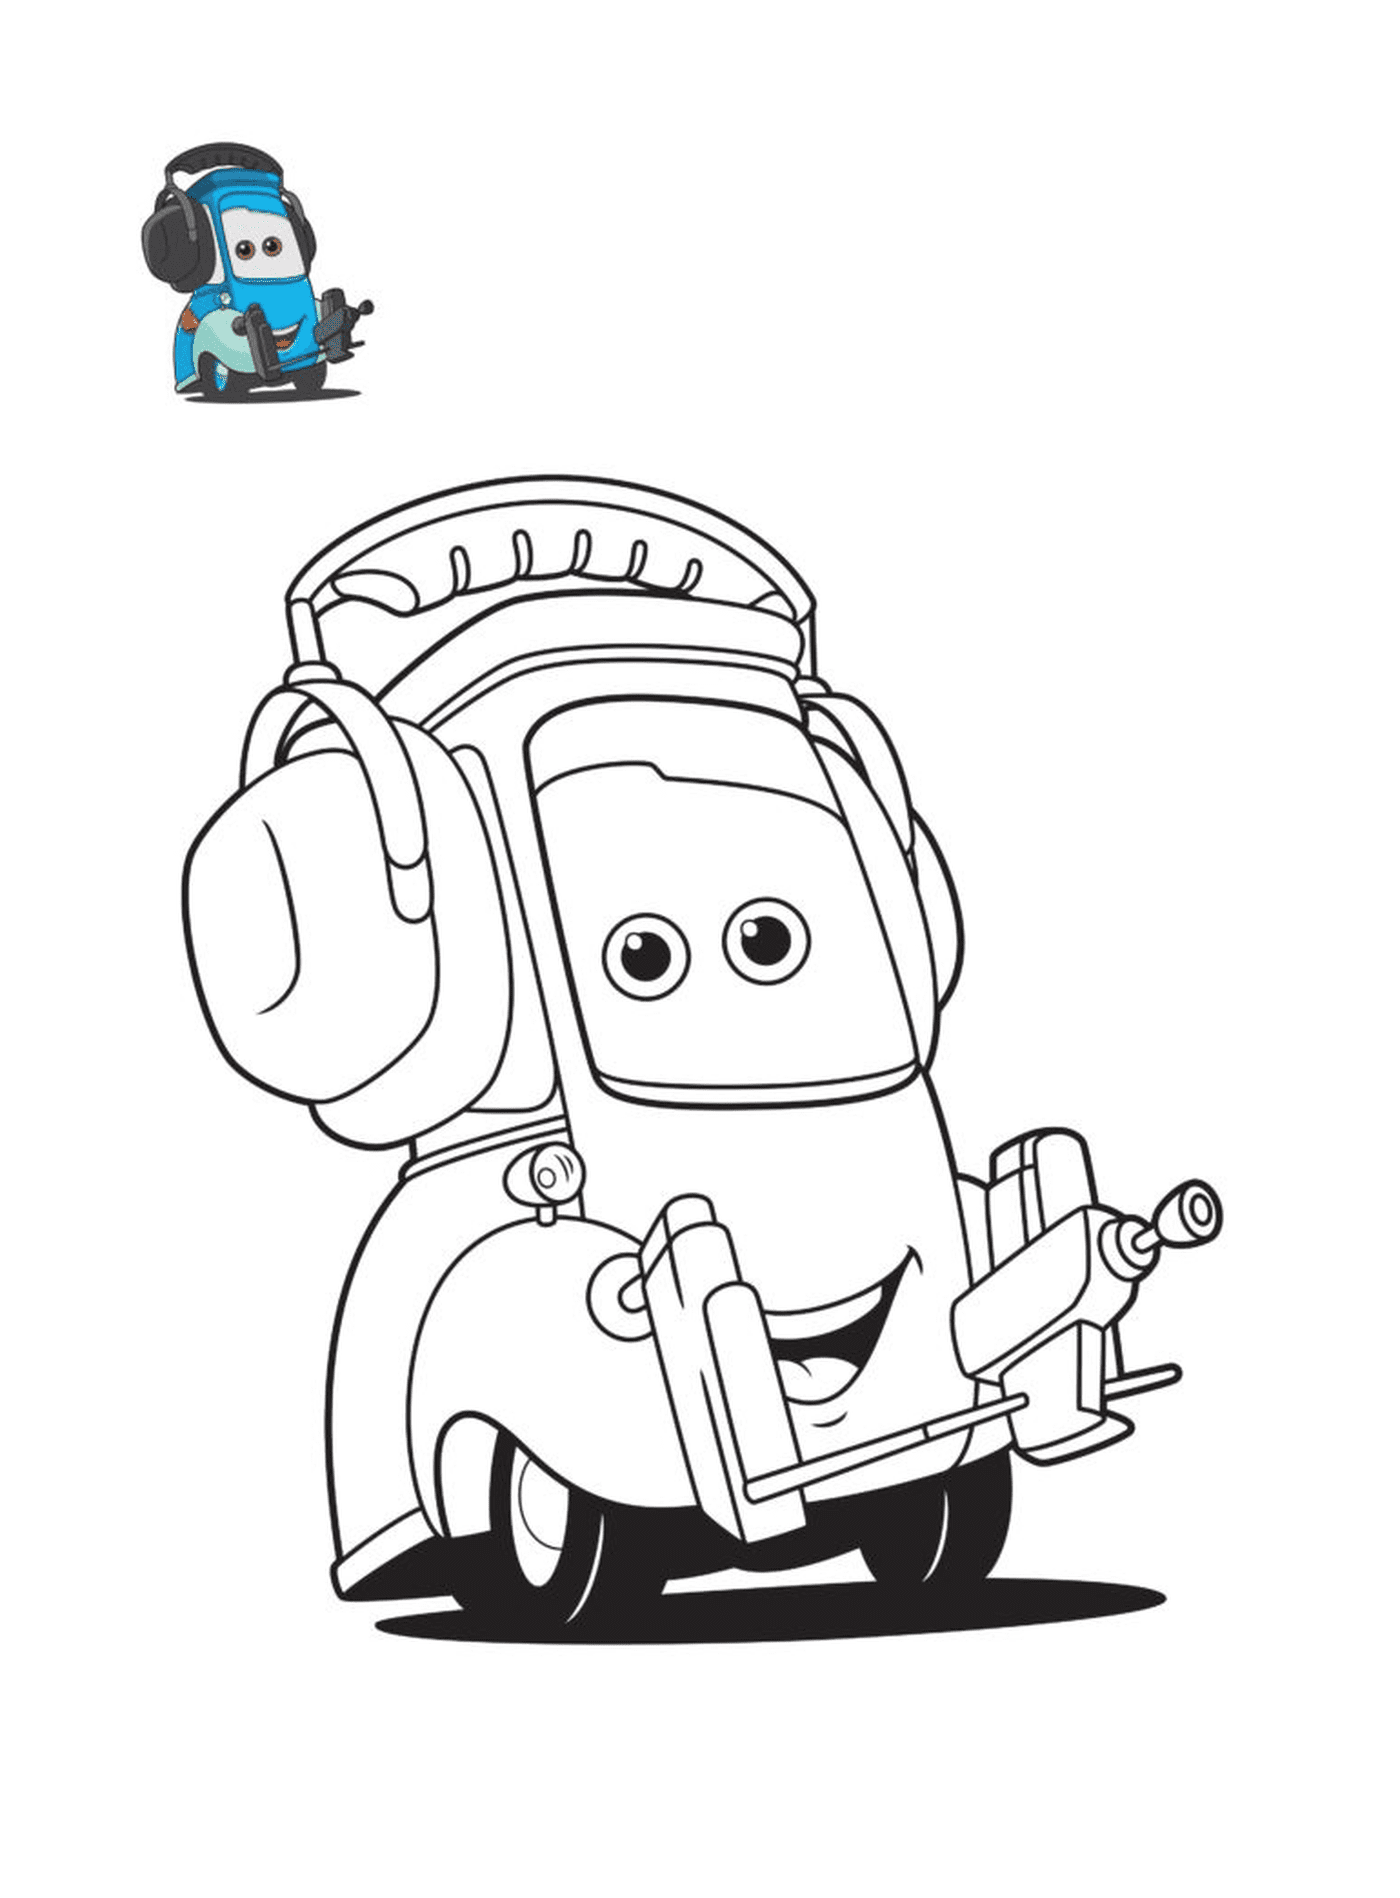  Машины 3, Гвидо, персонаж фильма Машины, машина с наушниками 